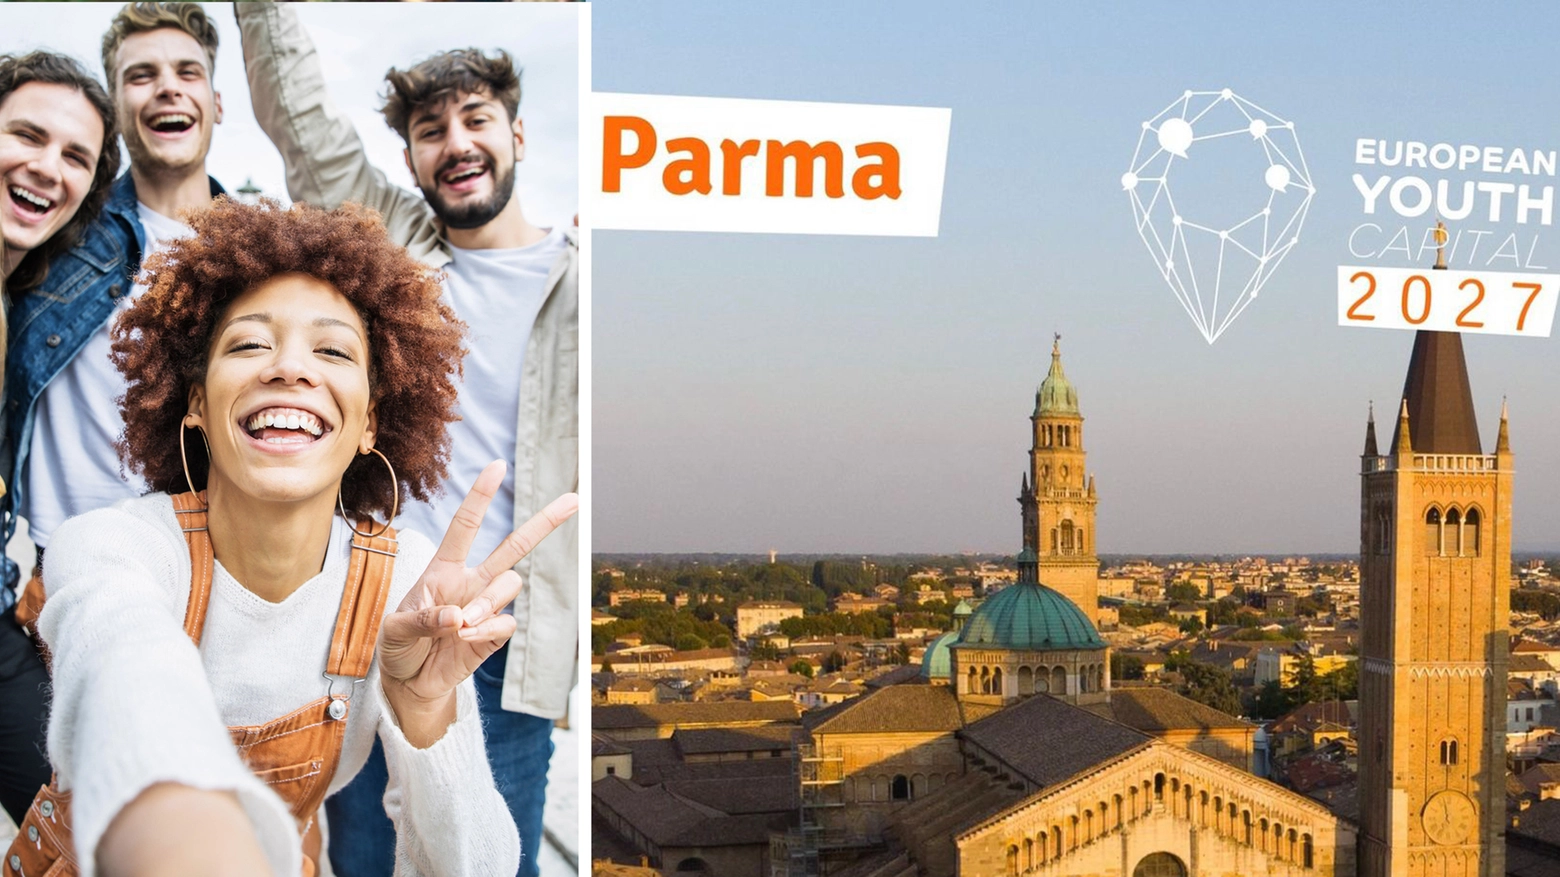 Parma è nella cinquina delle finaliste per diventare capitale europea dei giovani 2027